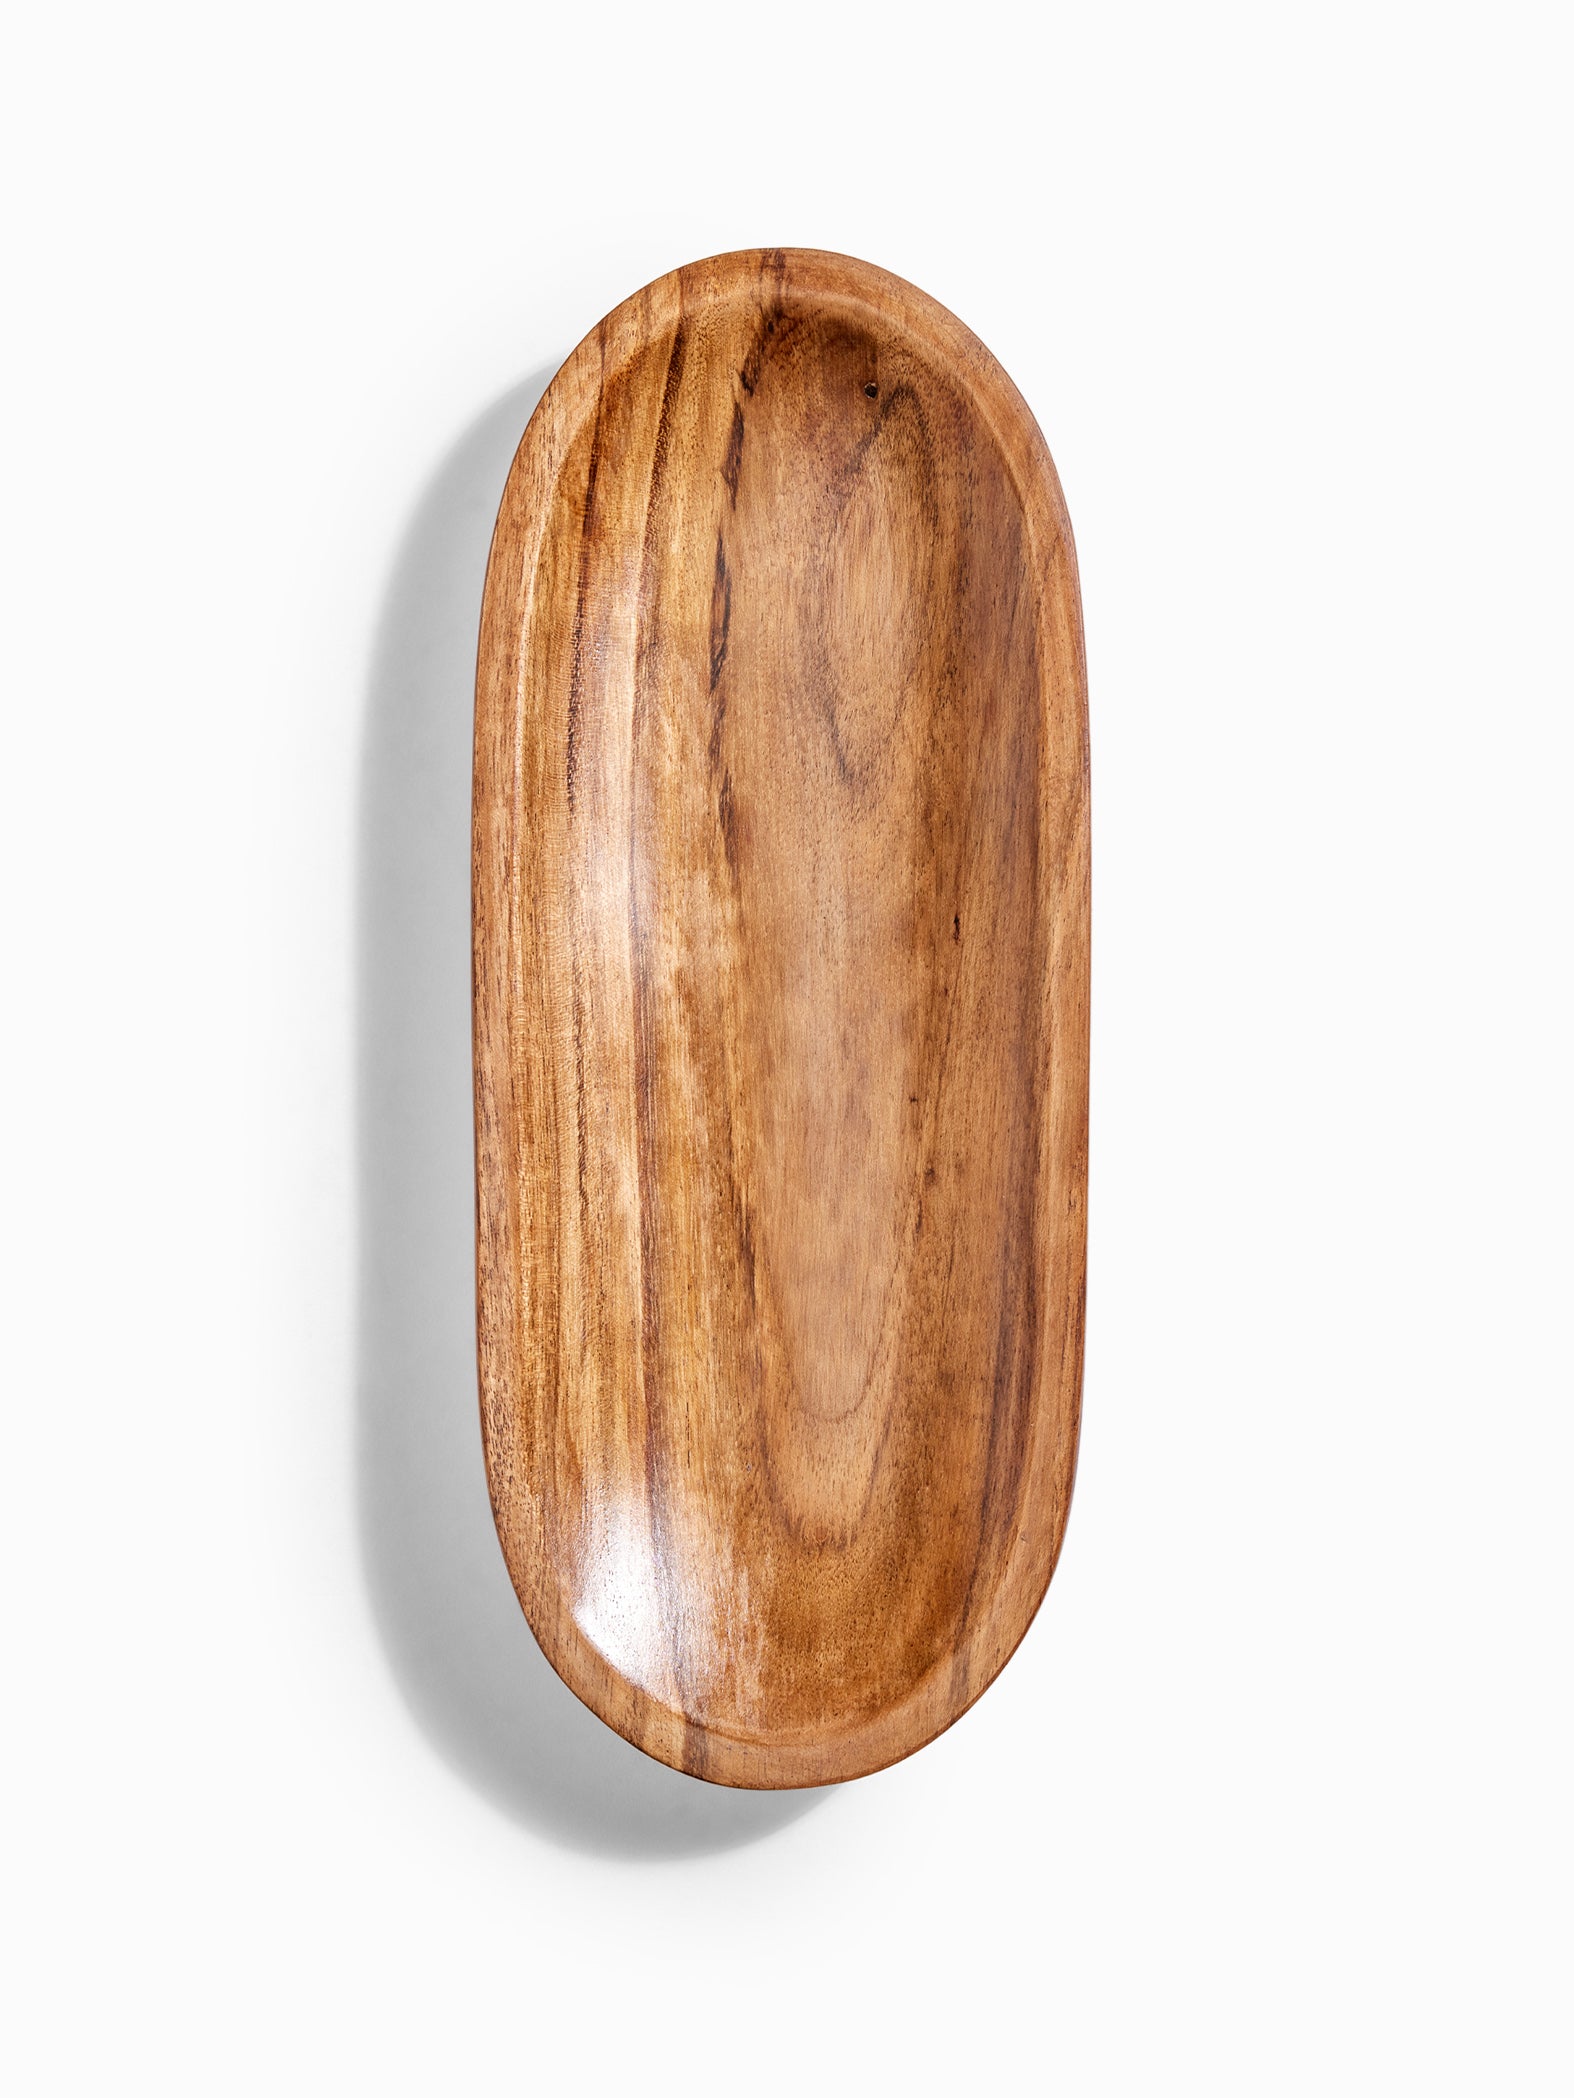 Wooden Oval Serving Platter